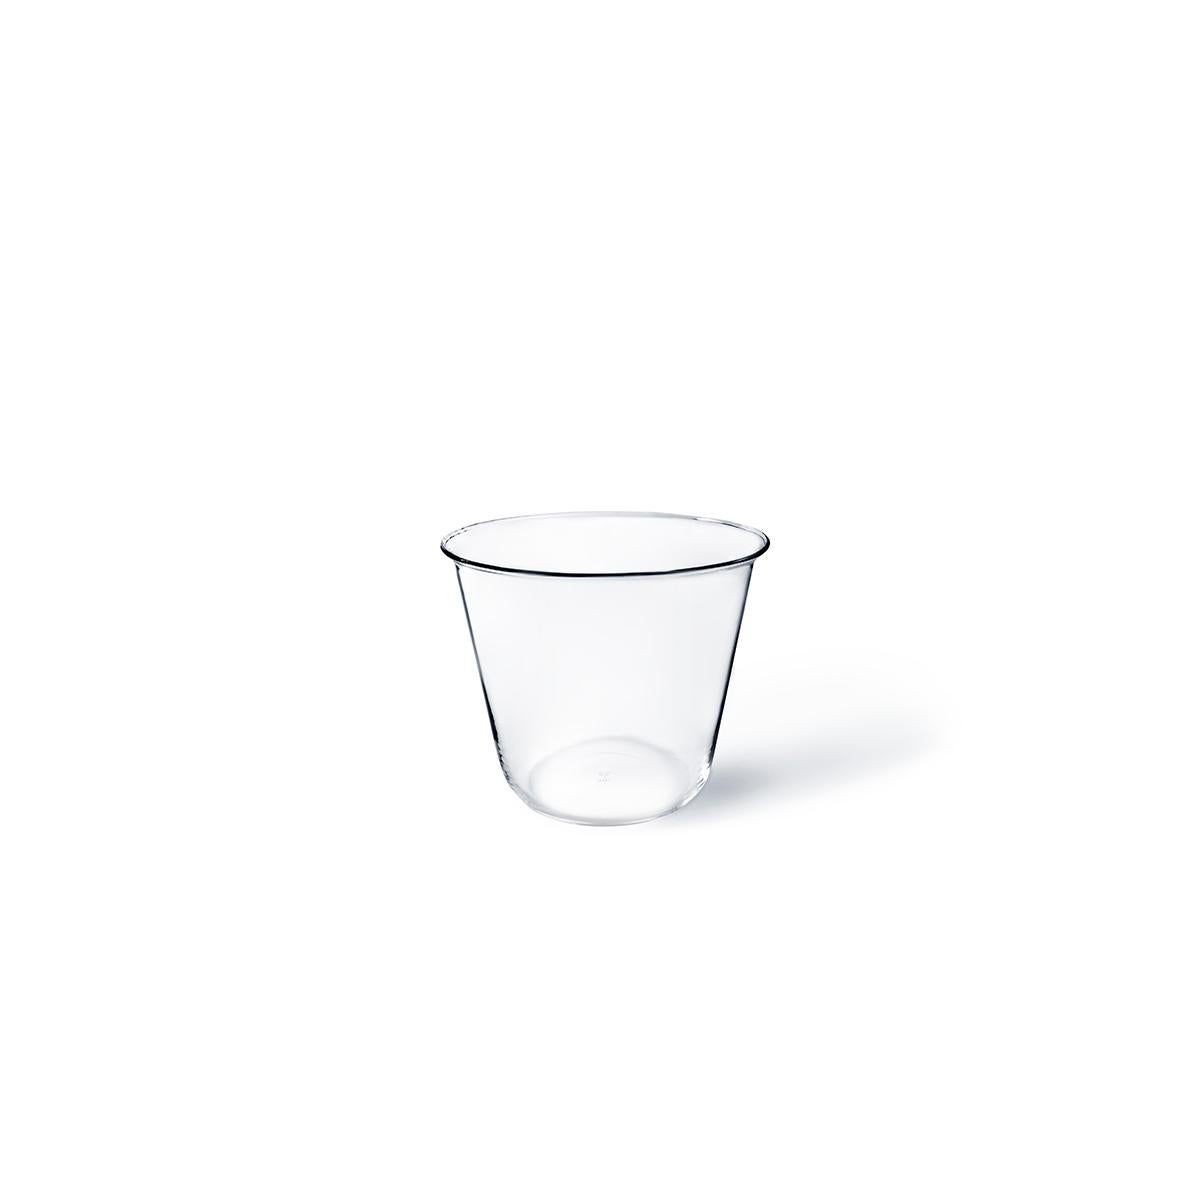 Campana ist eine von Aldo Cibic entworfene mundgeblasene Glasvase, ein nützliches und vielseitiges Objekt, das sowohl als Blumenvase als auch als Eiskübel dienen kann. Seine schlichte und elegante Silhouette macht ihn zu einem Artikel, der für alle